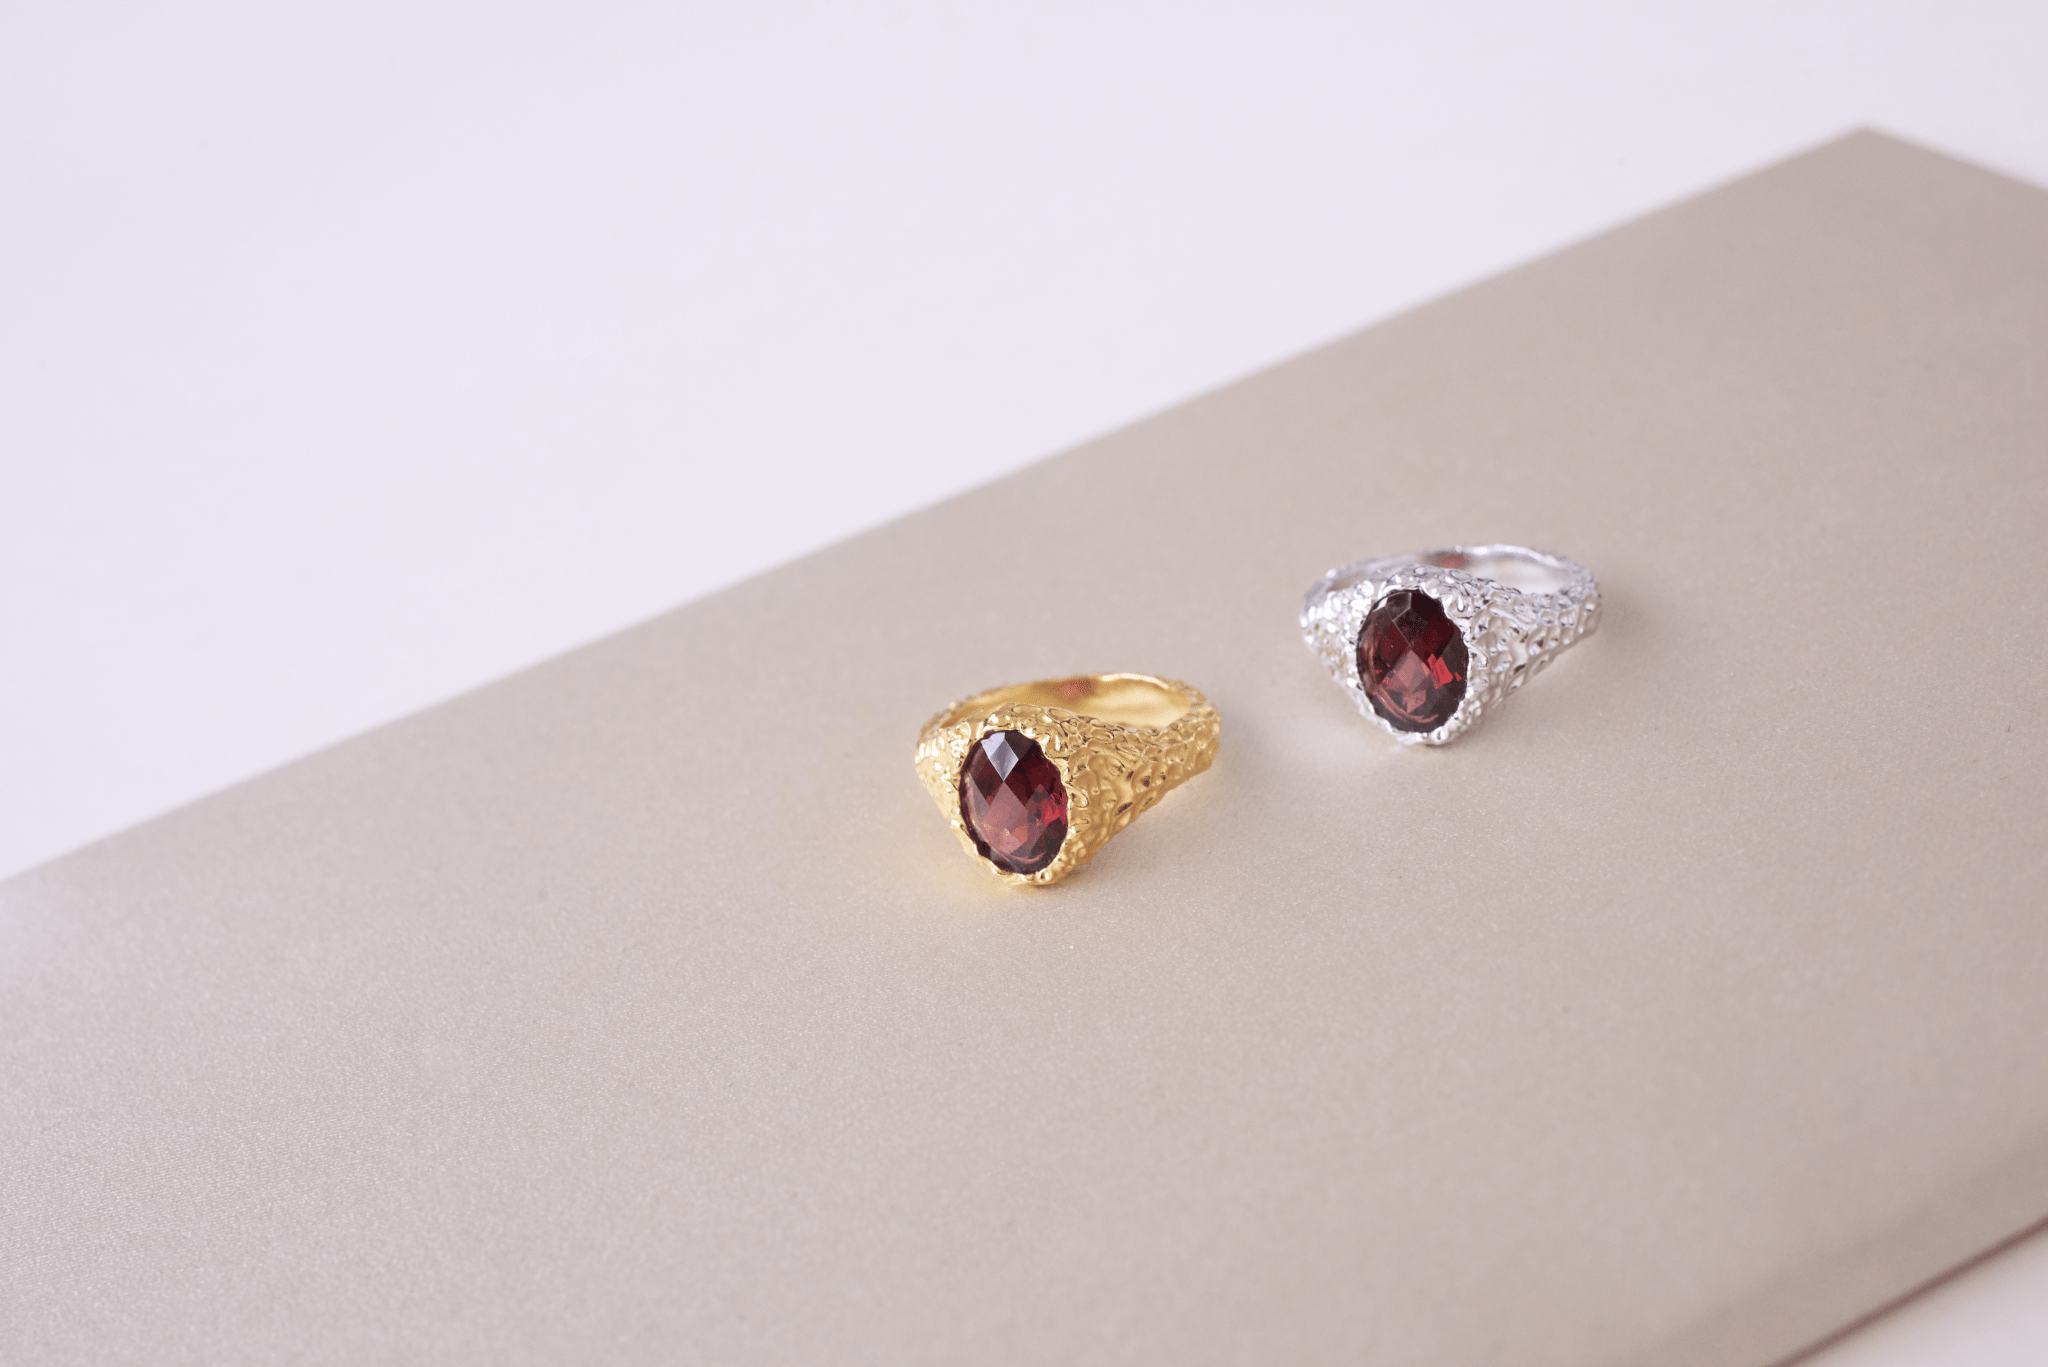 IX Crunchy Ornate Garnet Signet Ring Silver